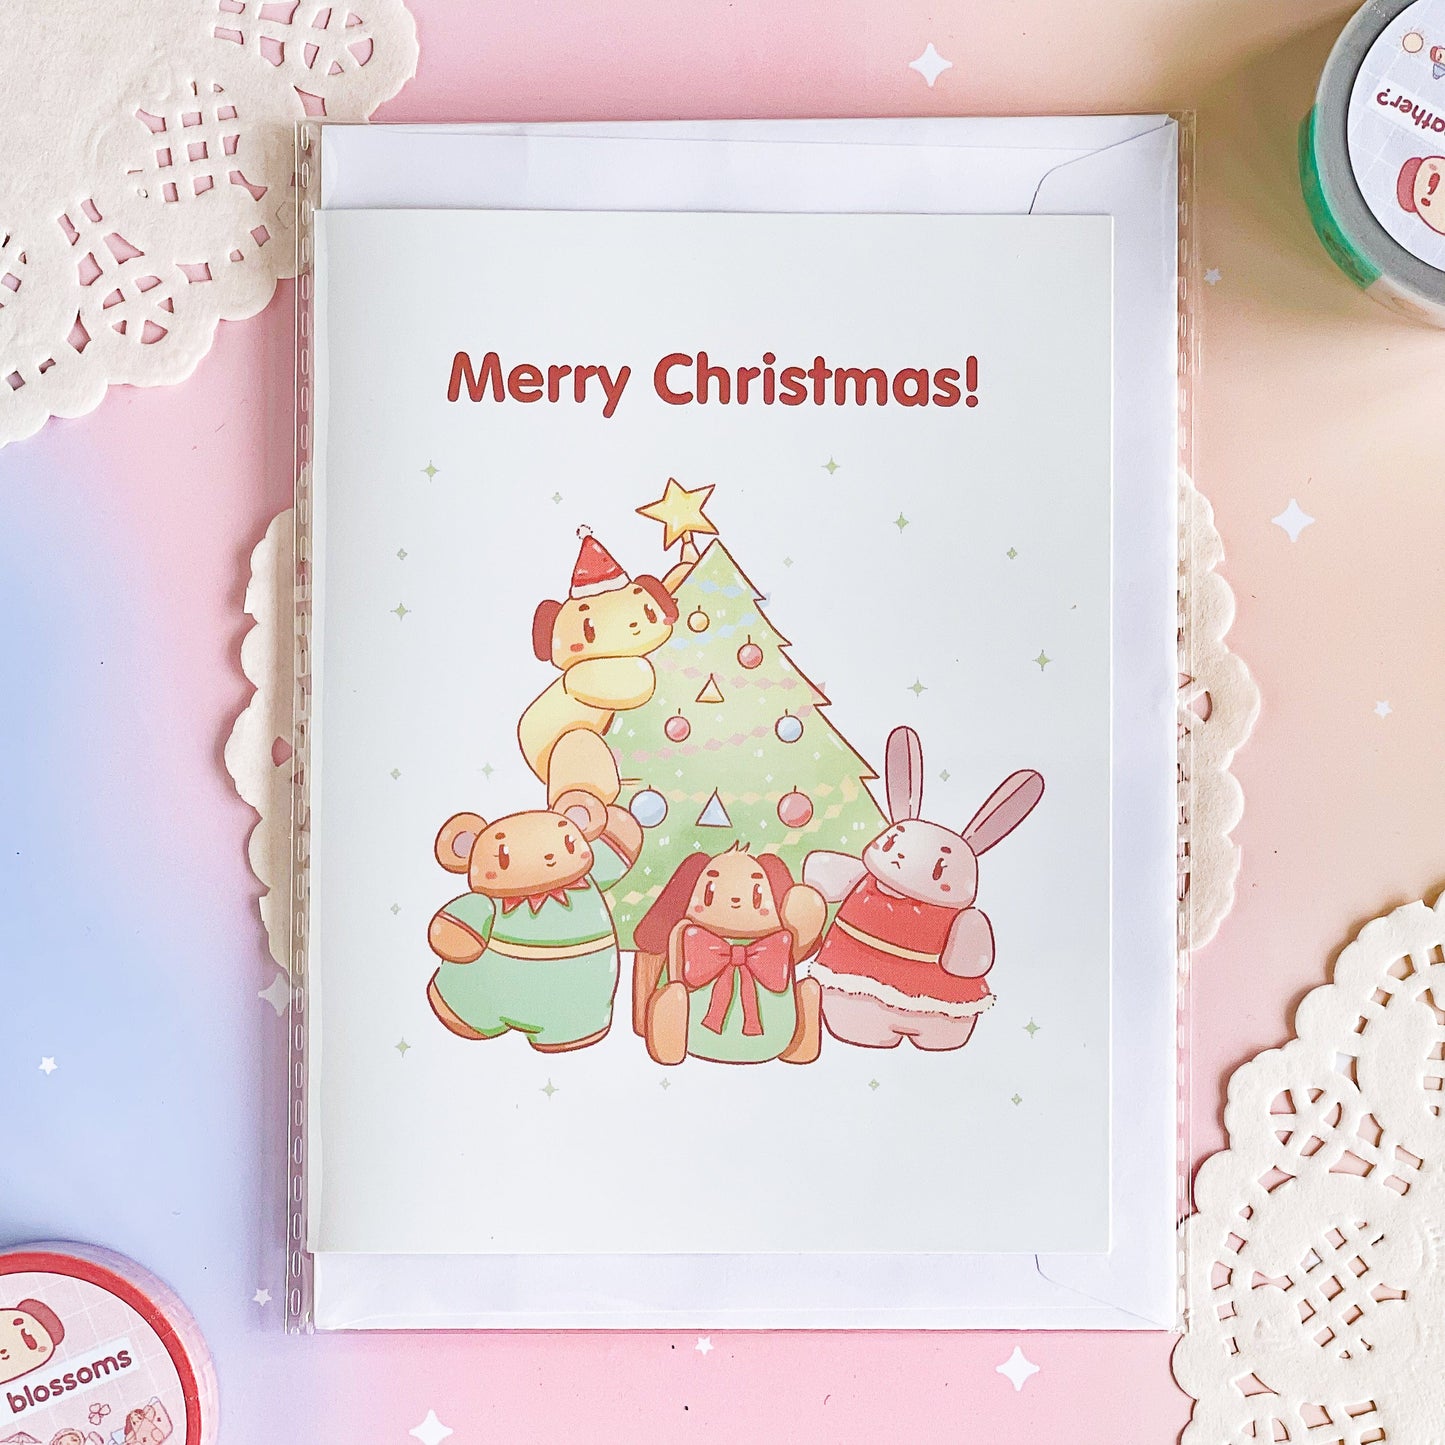 Merry Christmas (Christmas Greeting Card)